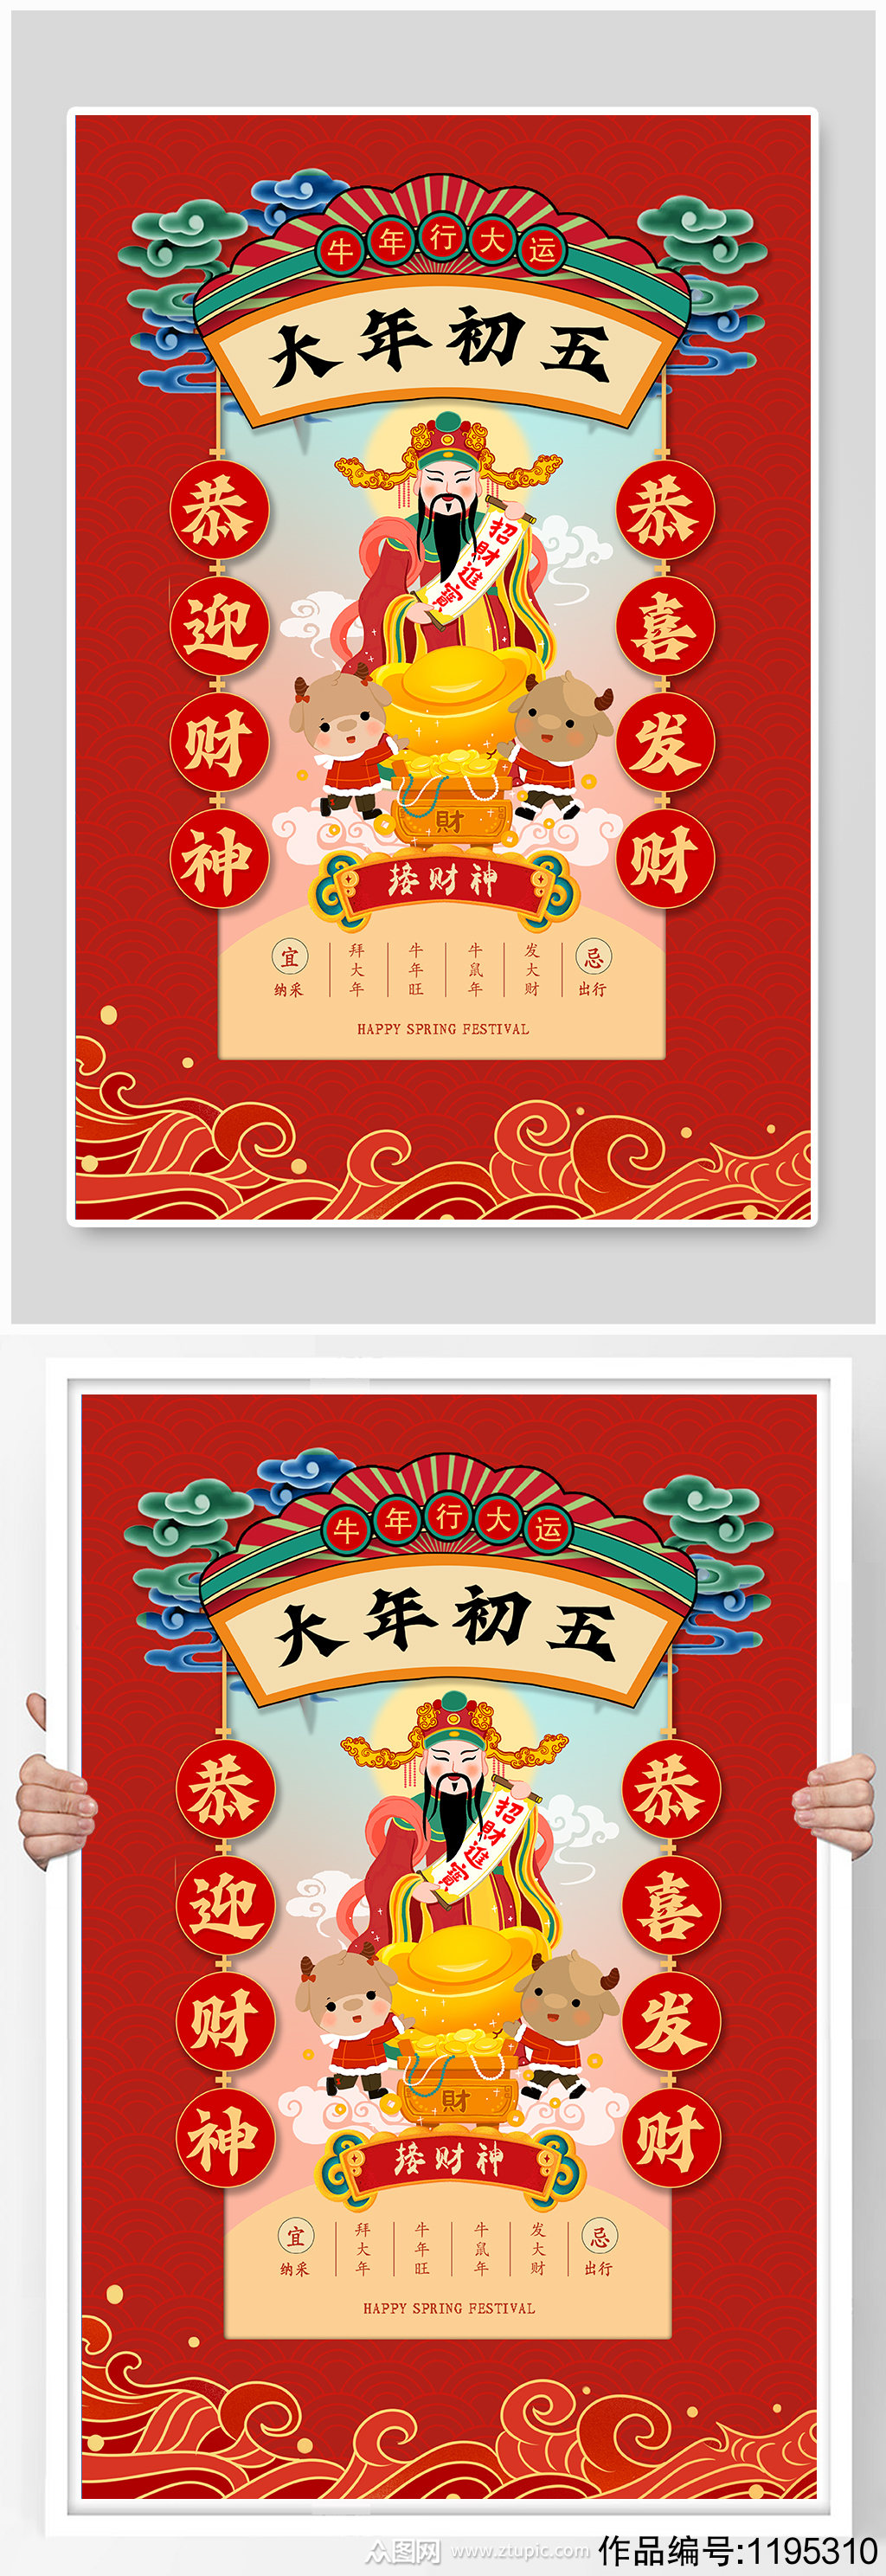 红色中国风大年初五迎财神海报